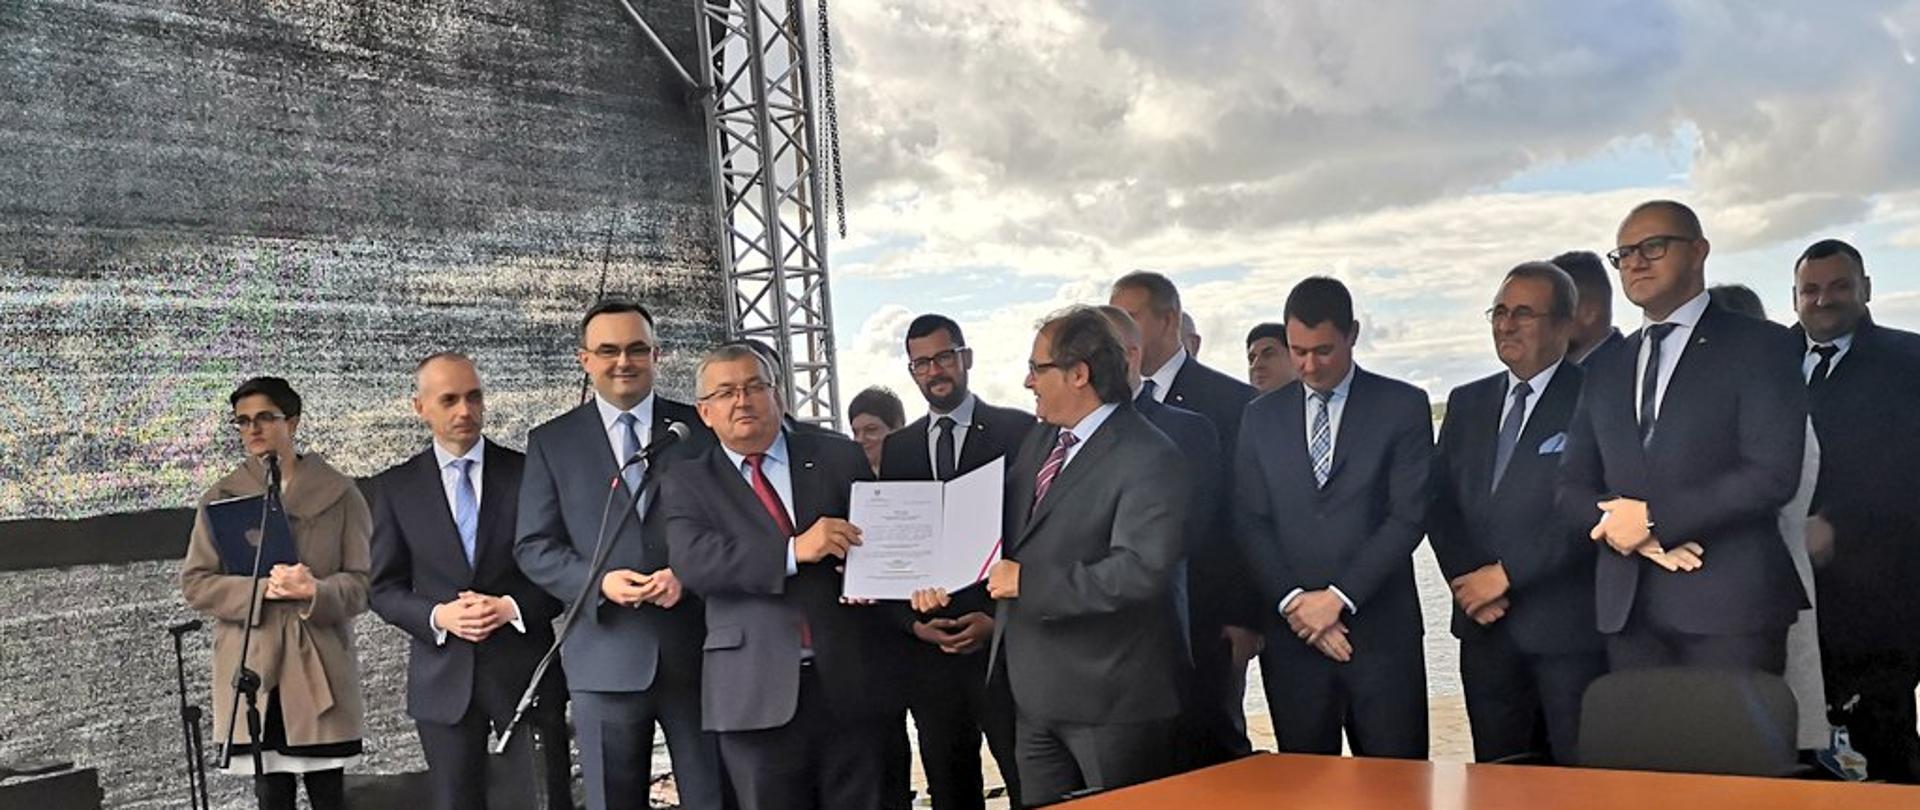 Wojewoda zachodniopomorski wydał decyzję o Zezwoleniu na Realizację Inwestycji Drogowej (ZRID) dla budowy tunelu łączącego wyspy Uznam i Wolin w Świnoujściu.